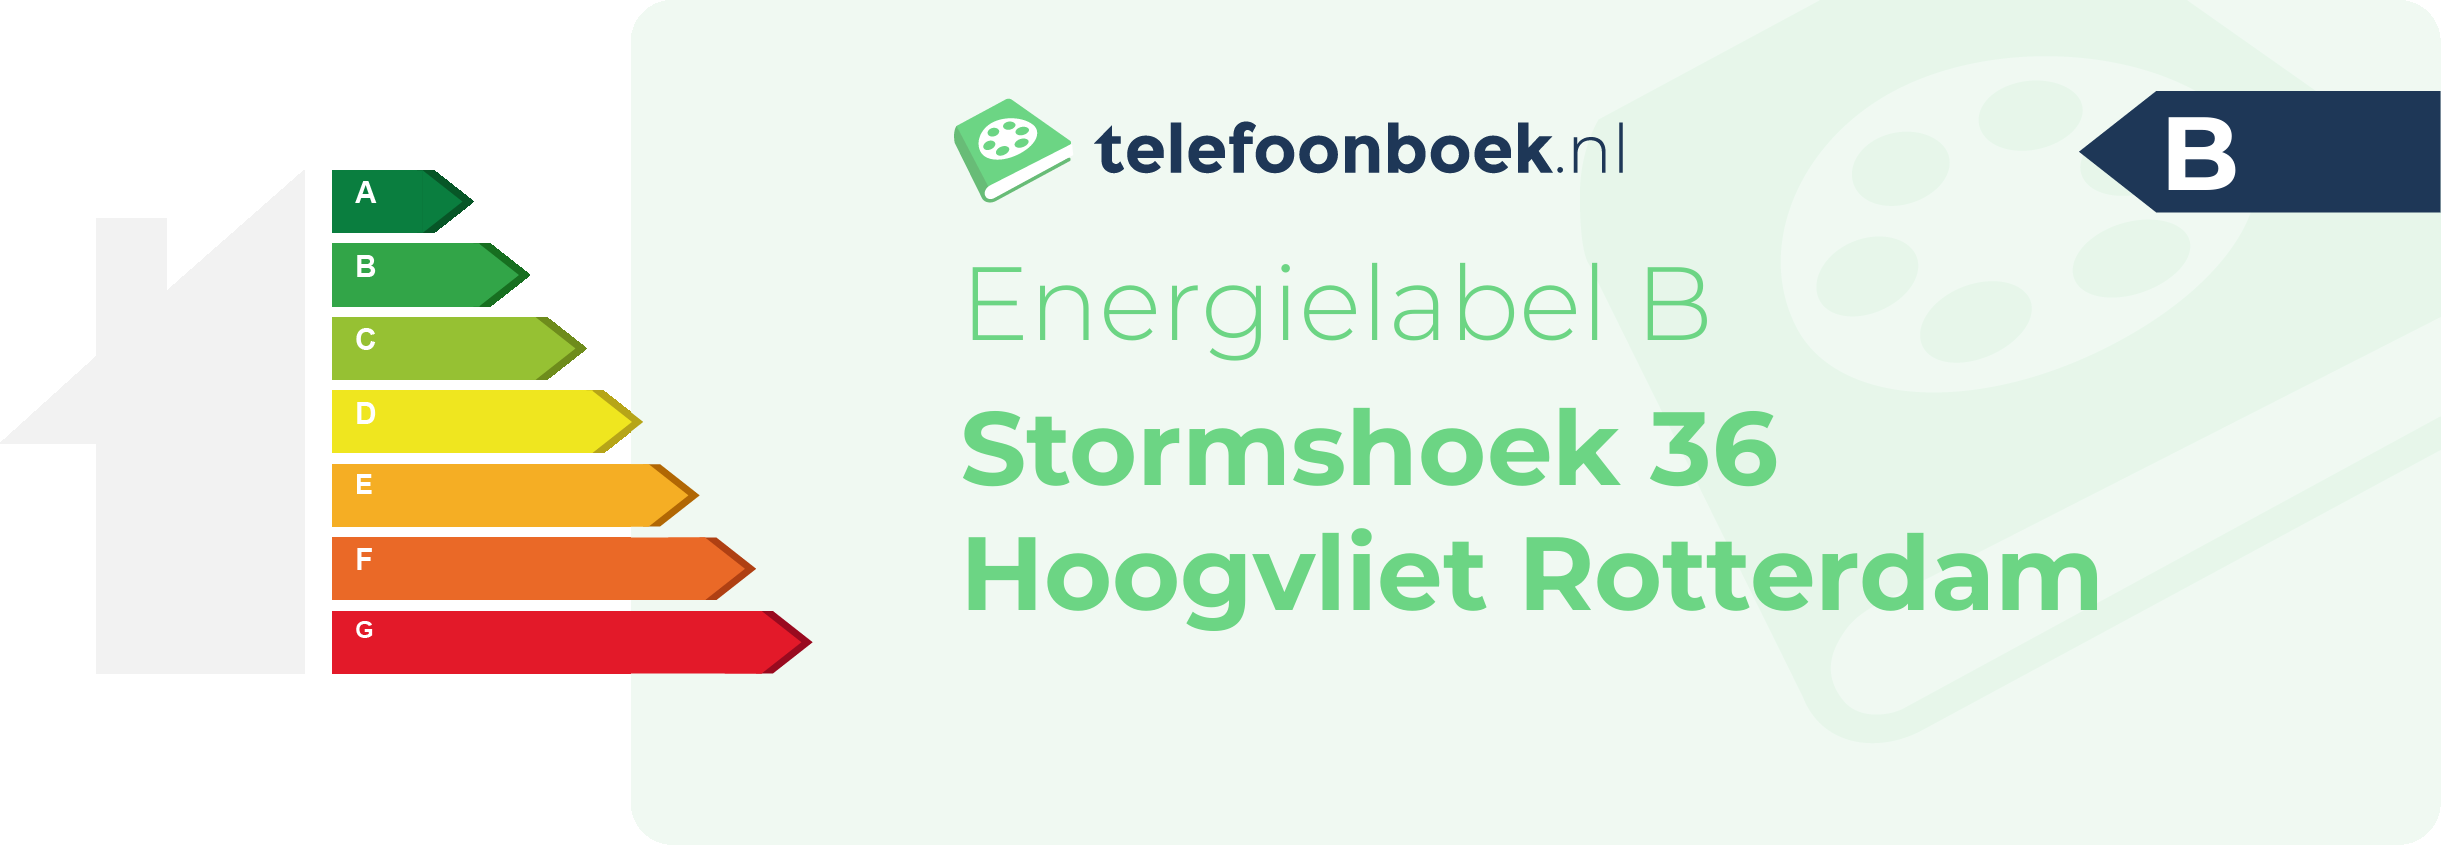 Energielabel Stormshoek 36 Hoogvliet Rotterdam